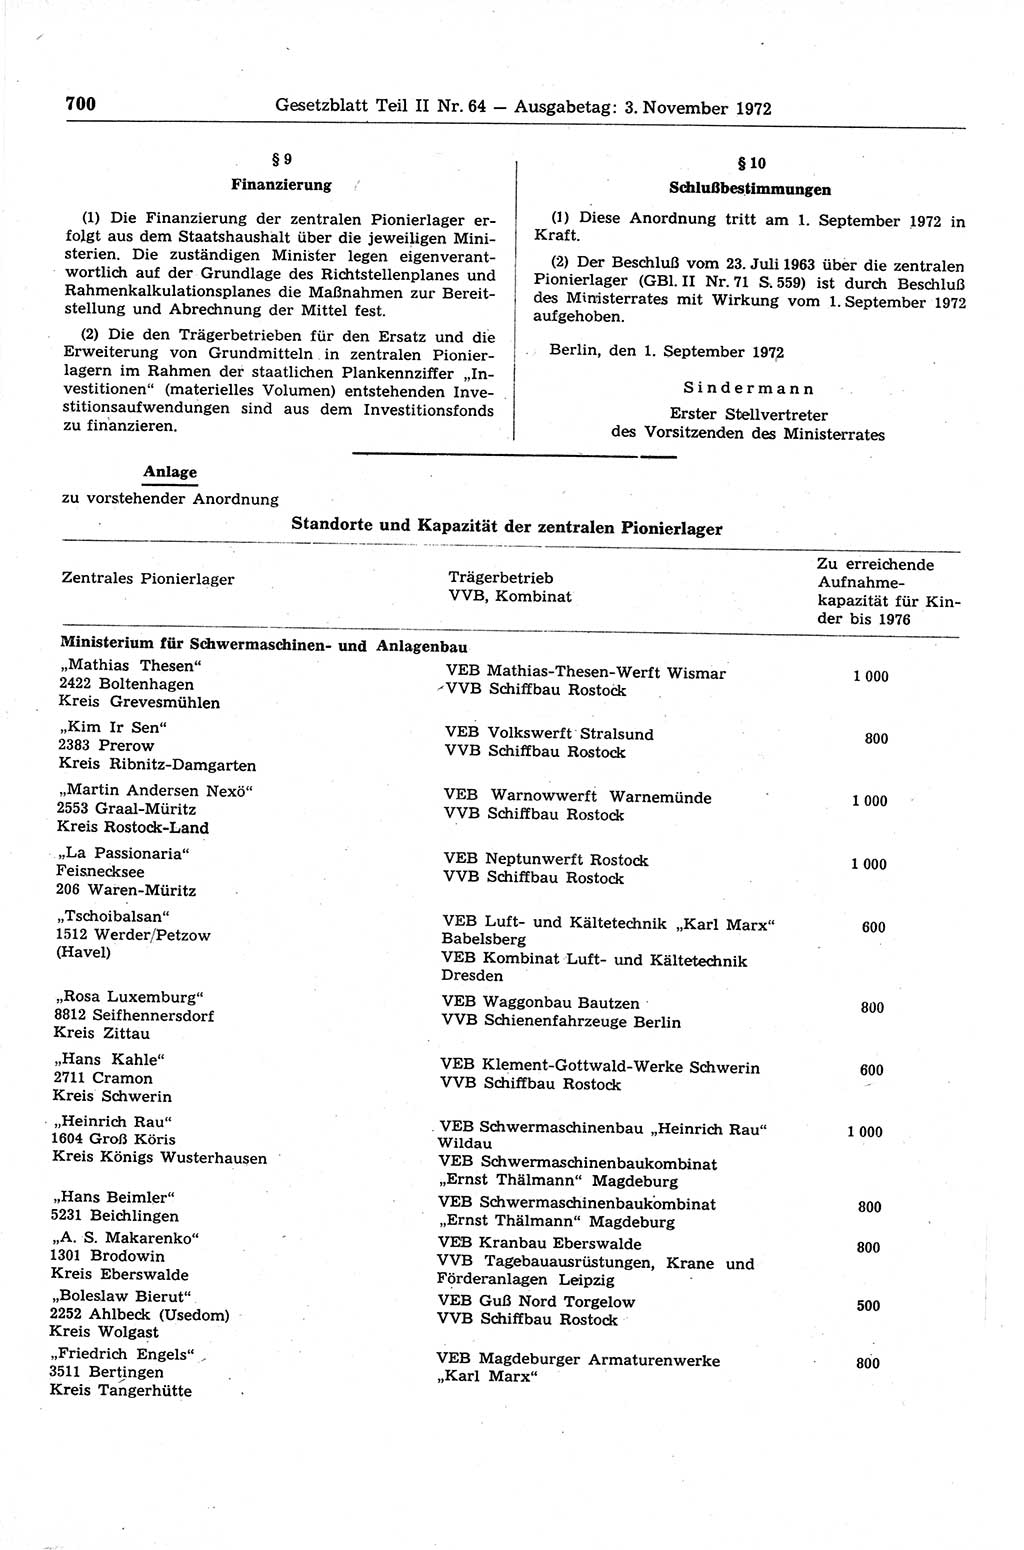 Gesetzblatt (GBl.) der Deutschen Demokratischen Republik (DDR) Teil ⅠⅠ 1972, Seite 700 (GBl. DDR ⅠⅠ 1972, S. 700)